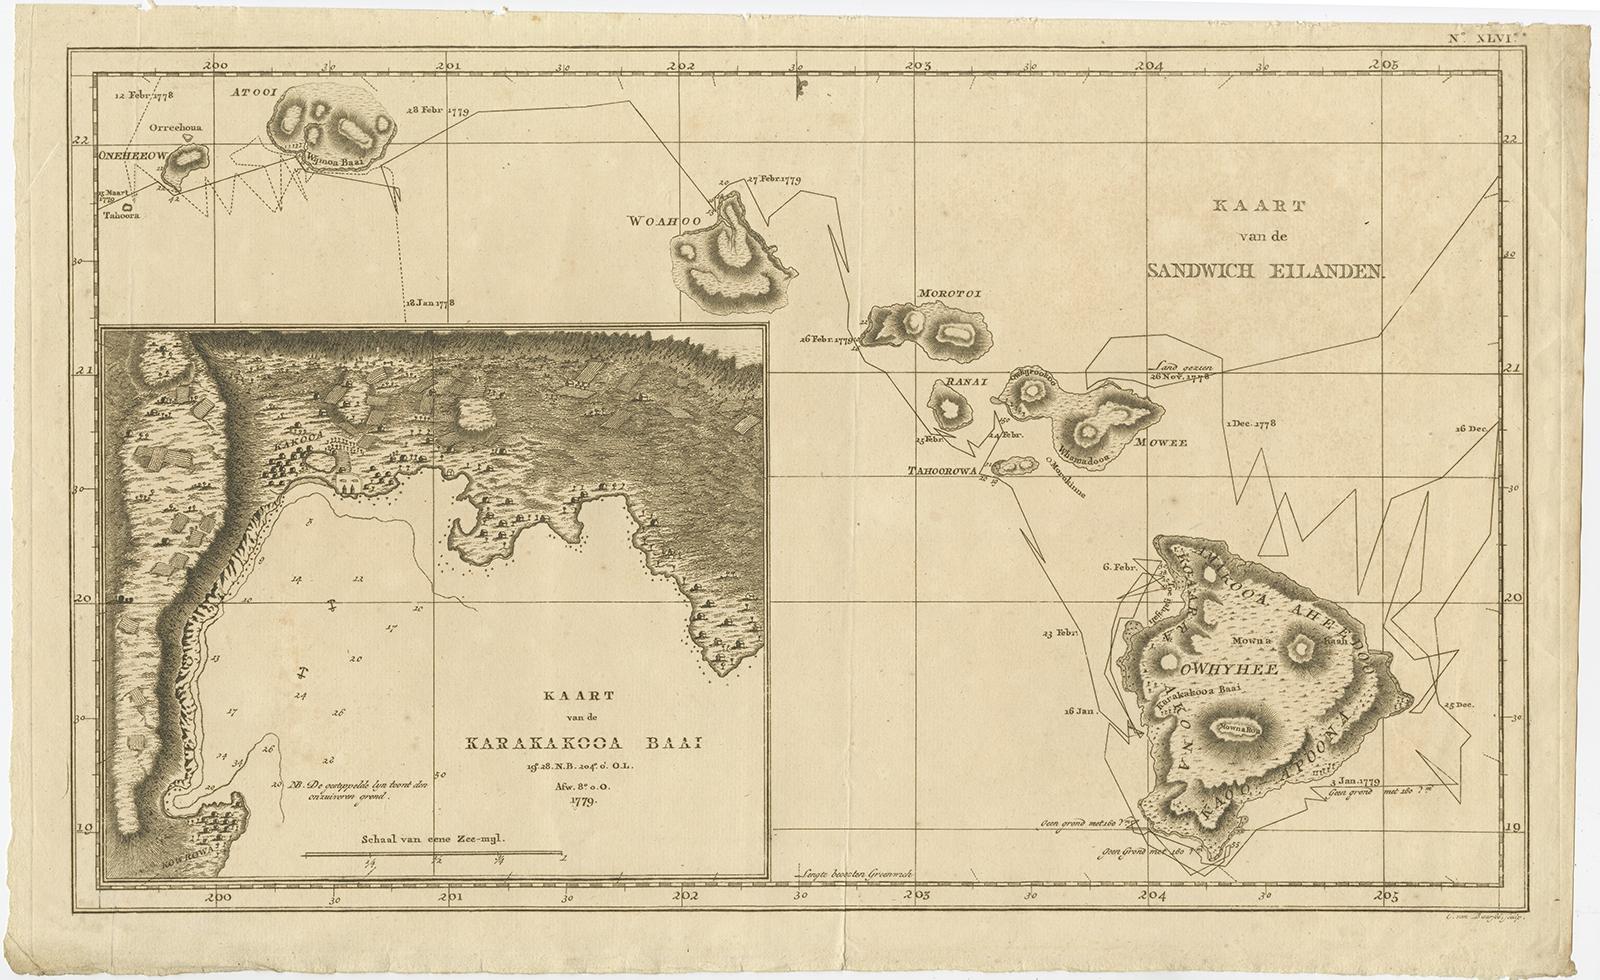 Antique map titled 'Kaart van de Sandwich Eilanden'. 

Map of the Hawaiian Islands with a large inset of Karakakooa Bay, including soundings and anchorages. Originates from 'Reizen Rondom de Waereld door James Cook (..)'. 

Artists and Engravers: